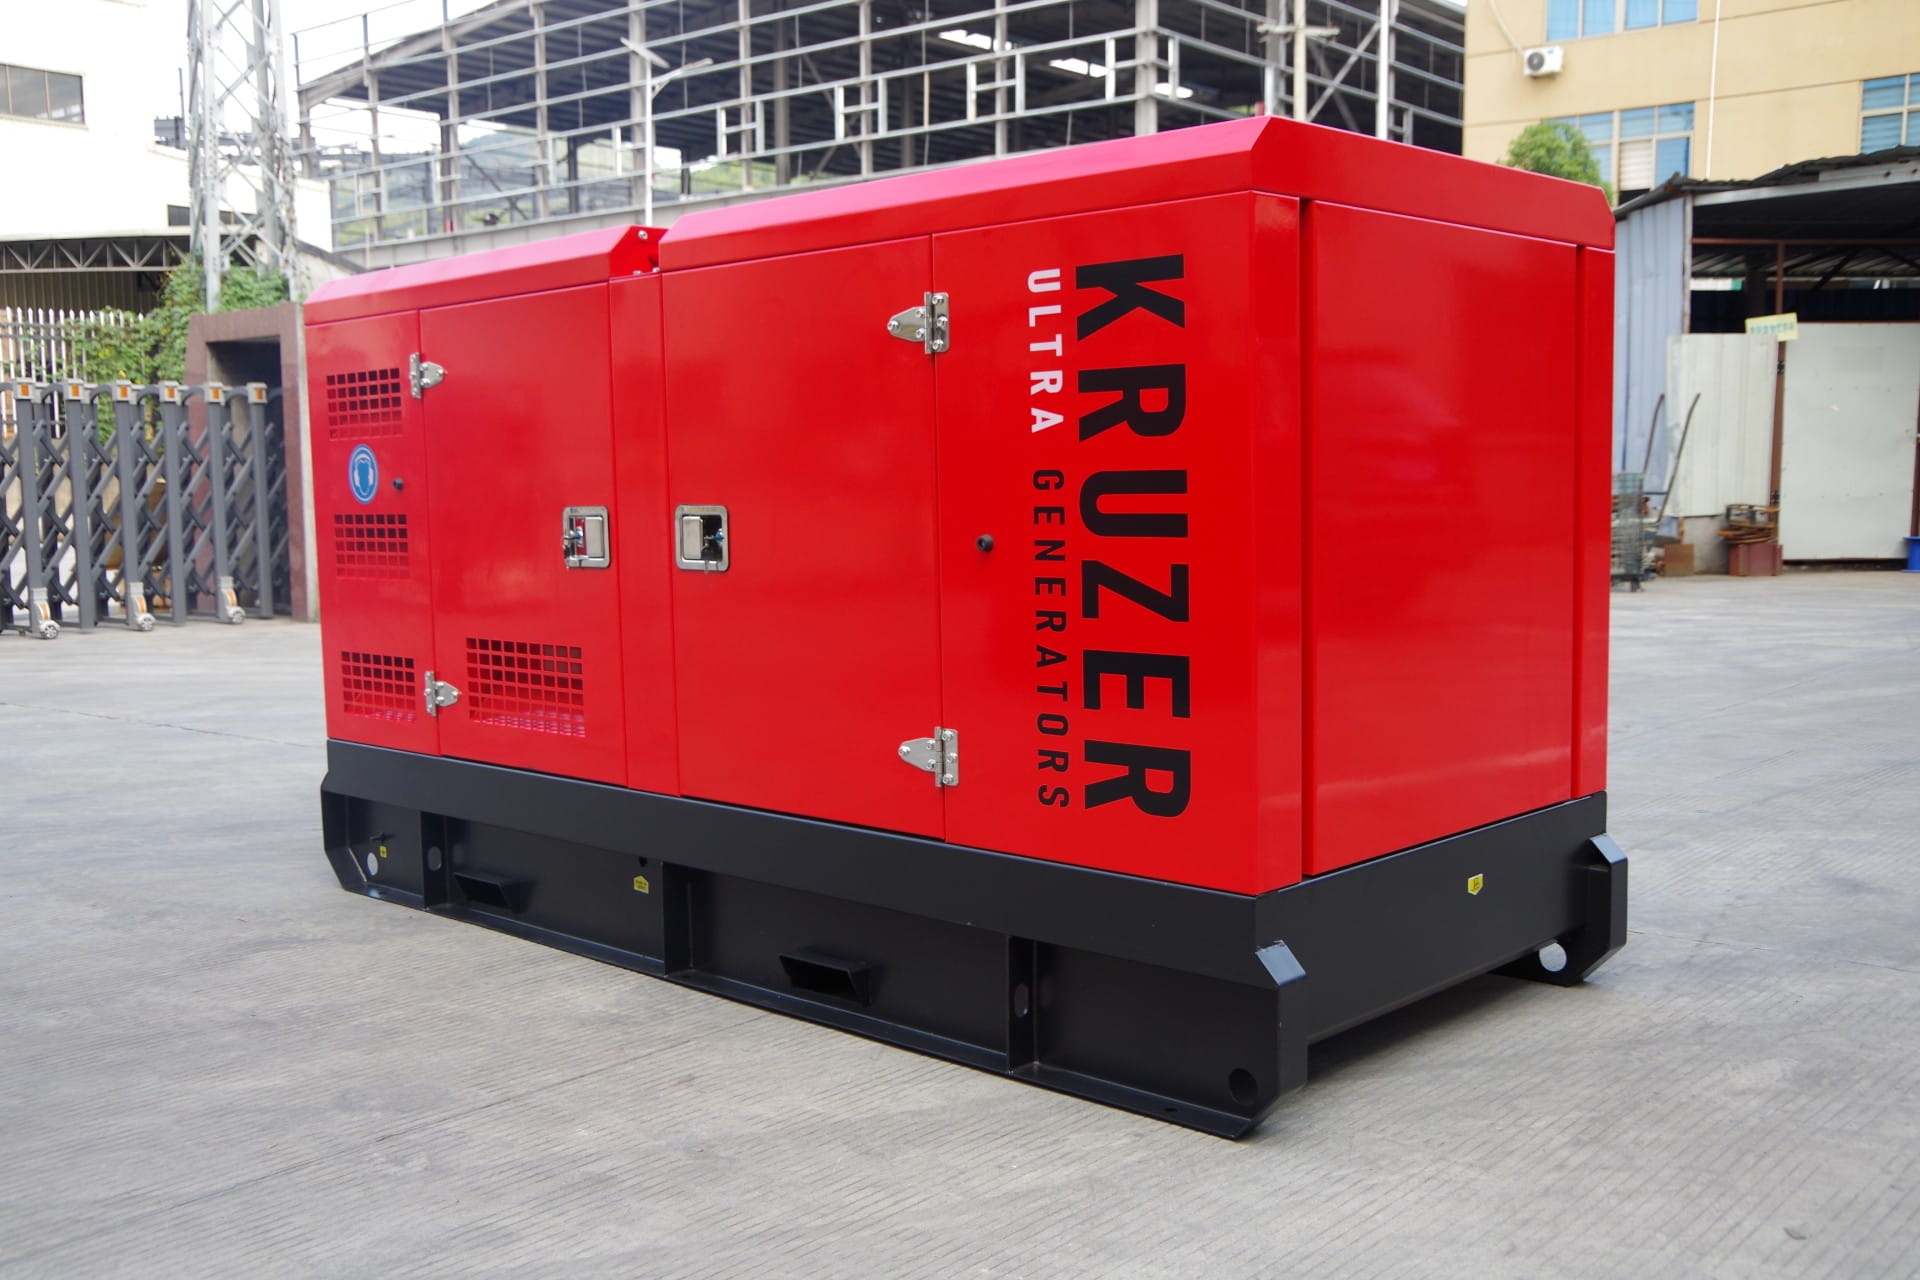 KRUZER Agregat prądotwórczy stacjonarny KR-K44